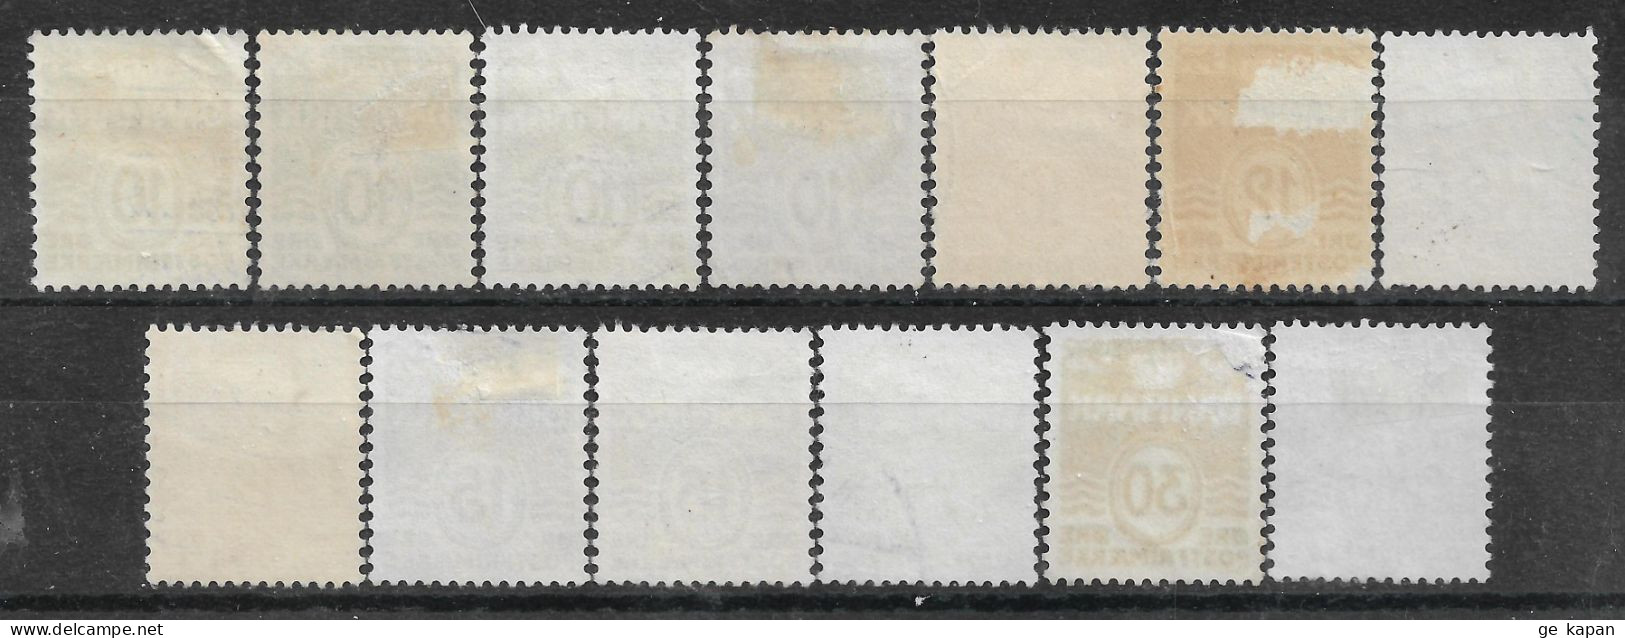 1950-1983 DENMARK Set Of 13 USED STAMPS (Michel # 328x,332x,410x,427x,456y,774) - Gebruikt